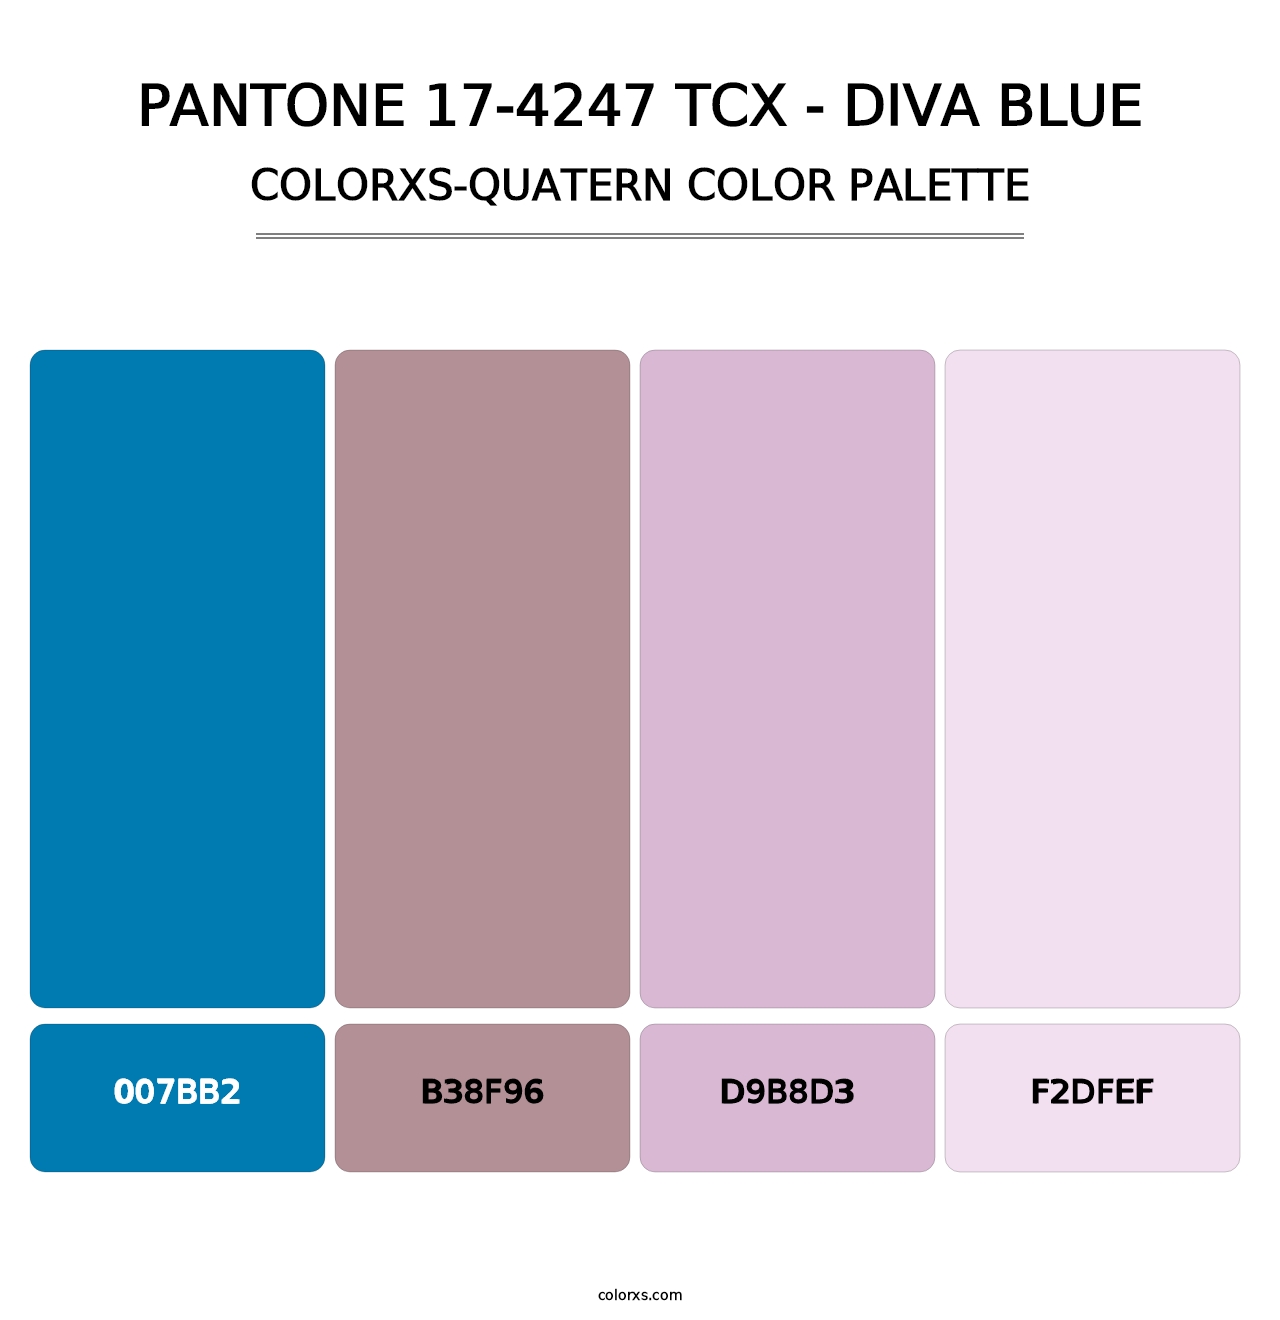 PANTONE 17-4247 TCX - Diva Blue - Colorxs Quatern Palette